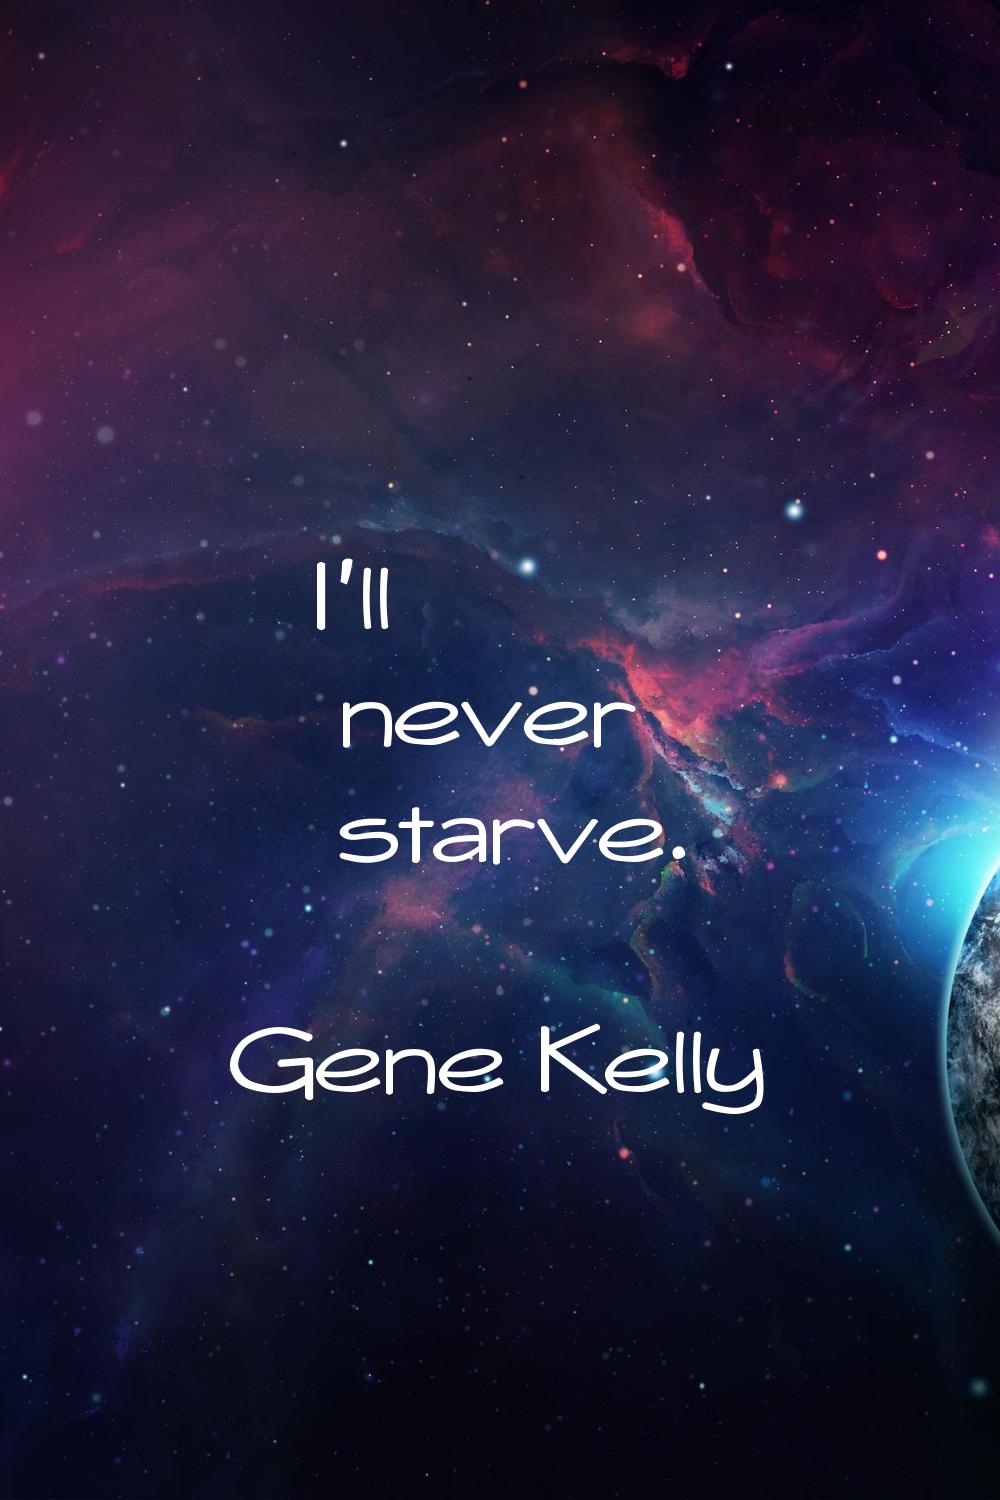 I'll never starve.